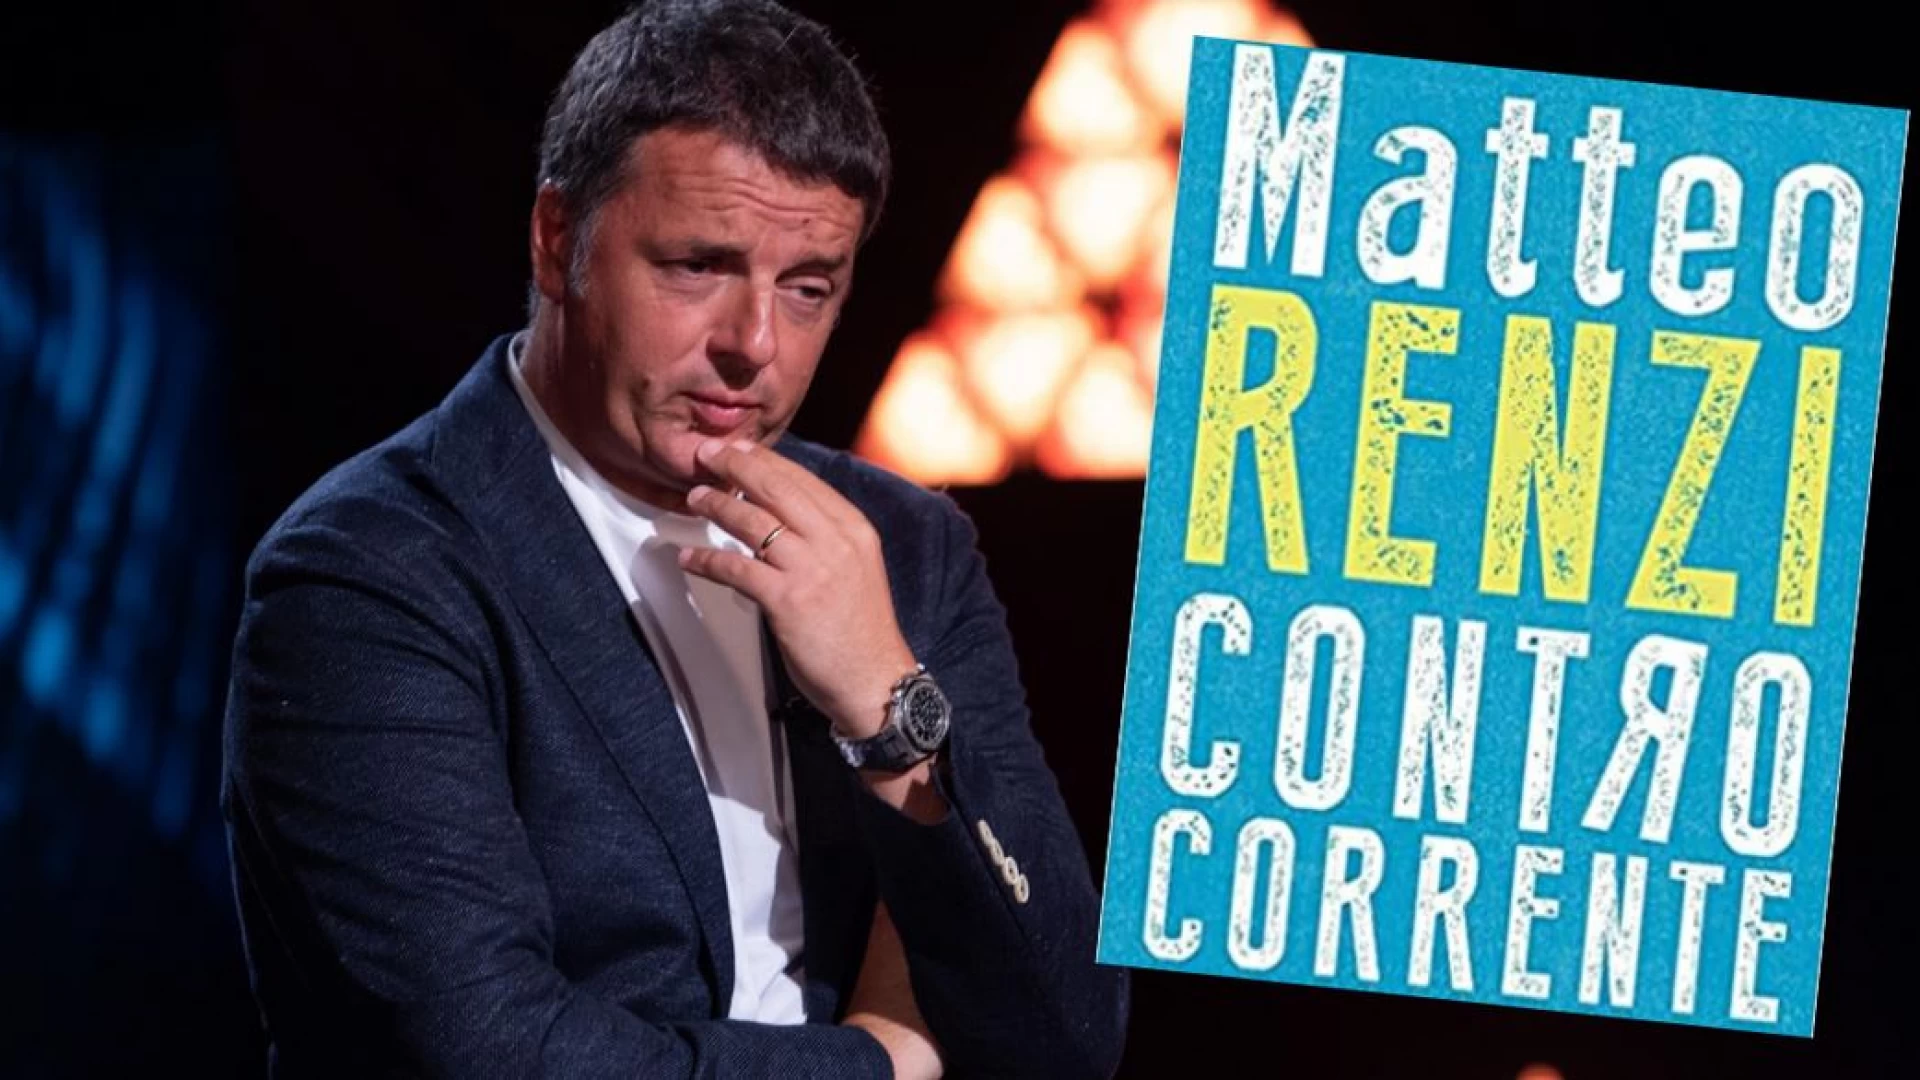 Termoli: Matteo Renzi presenterà il suo libro “Controcorrente” lunedì 26 luglio in città.